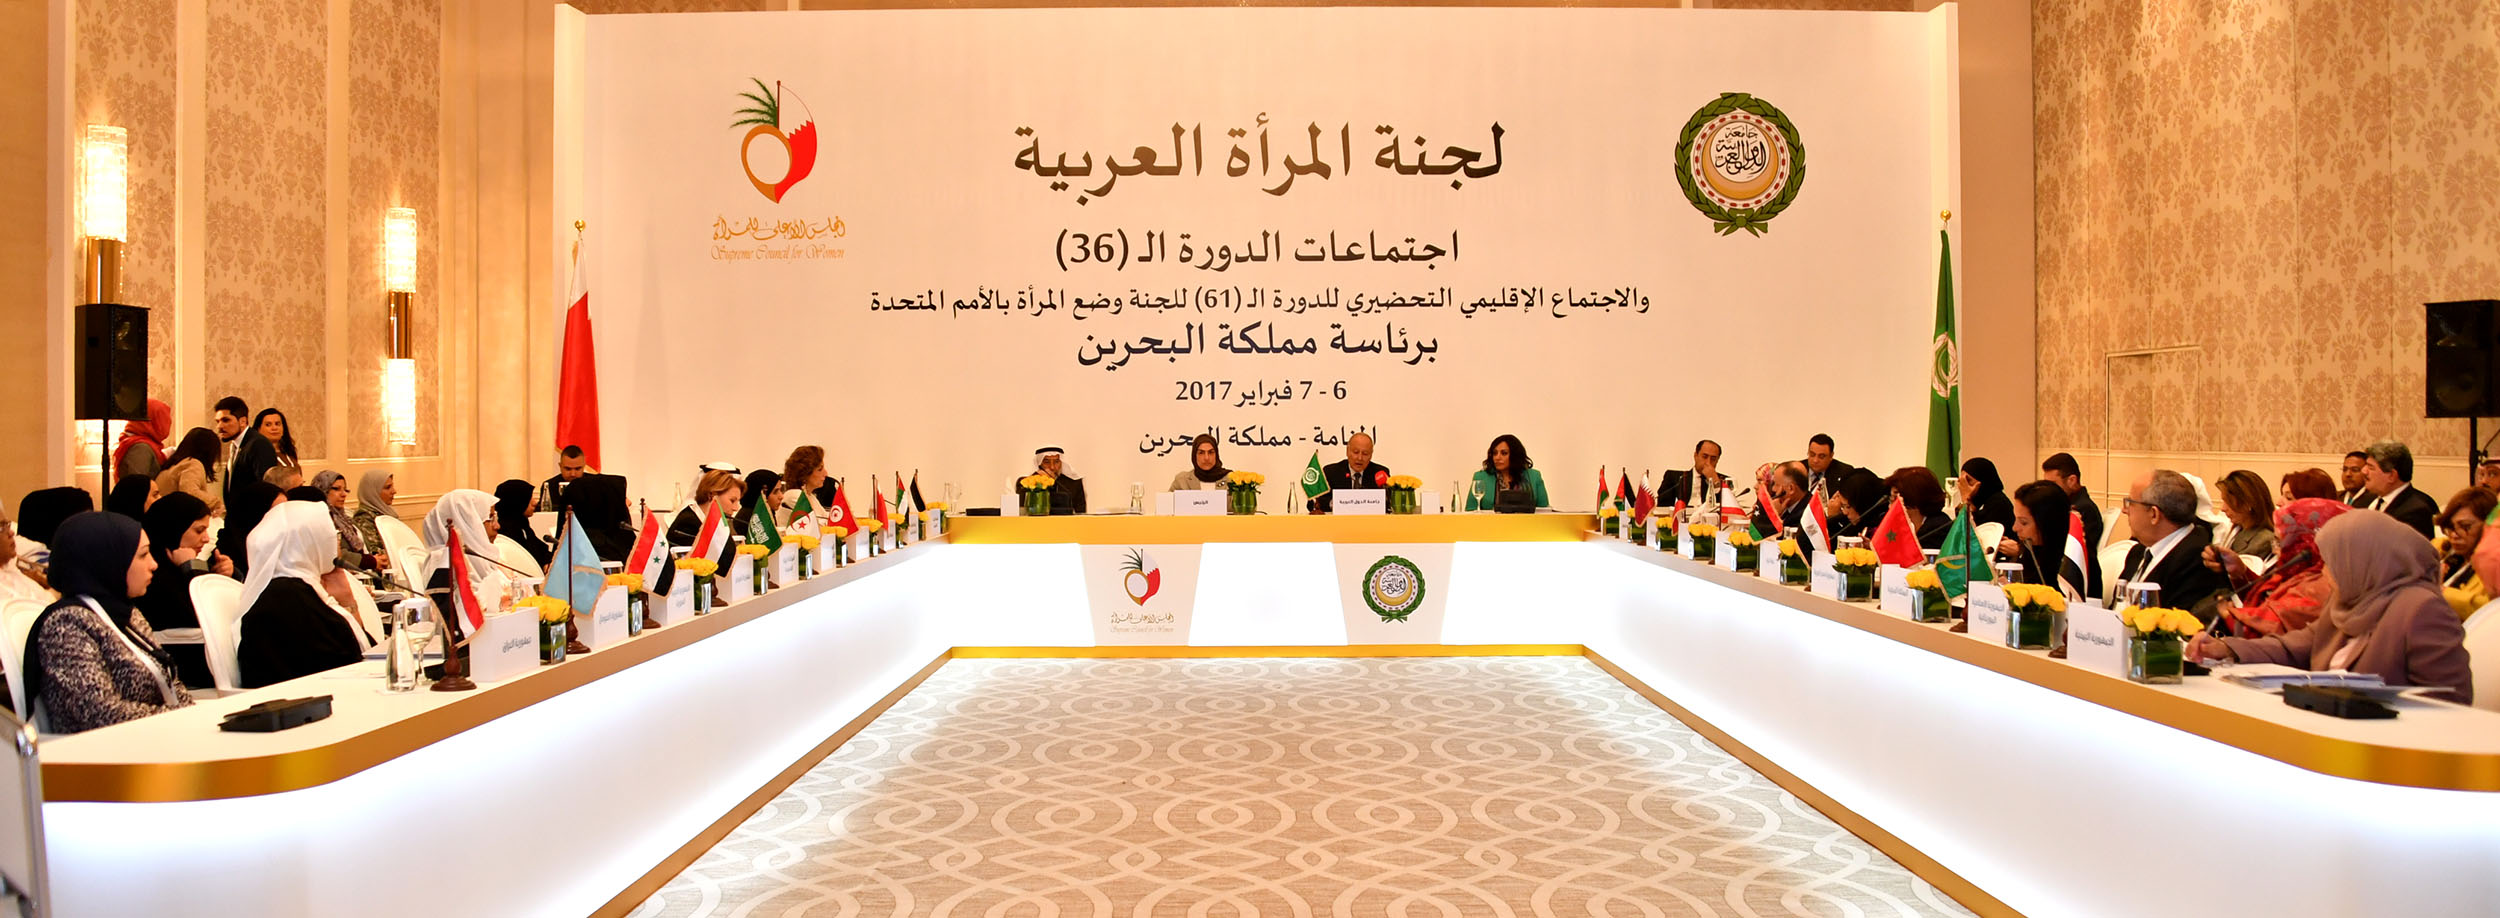 دعم الجامعة العربية لأجندة المرأة في الأمن والسلام على المستوي الإقليمي